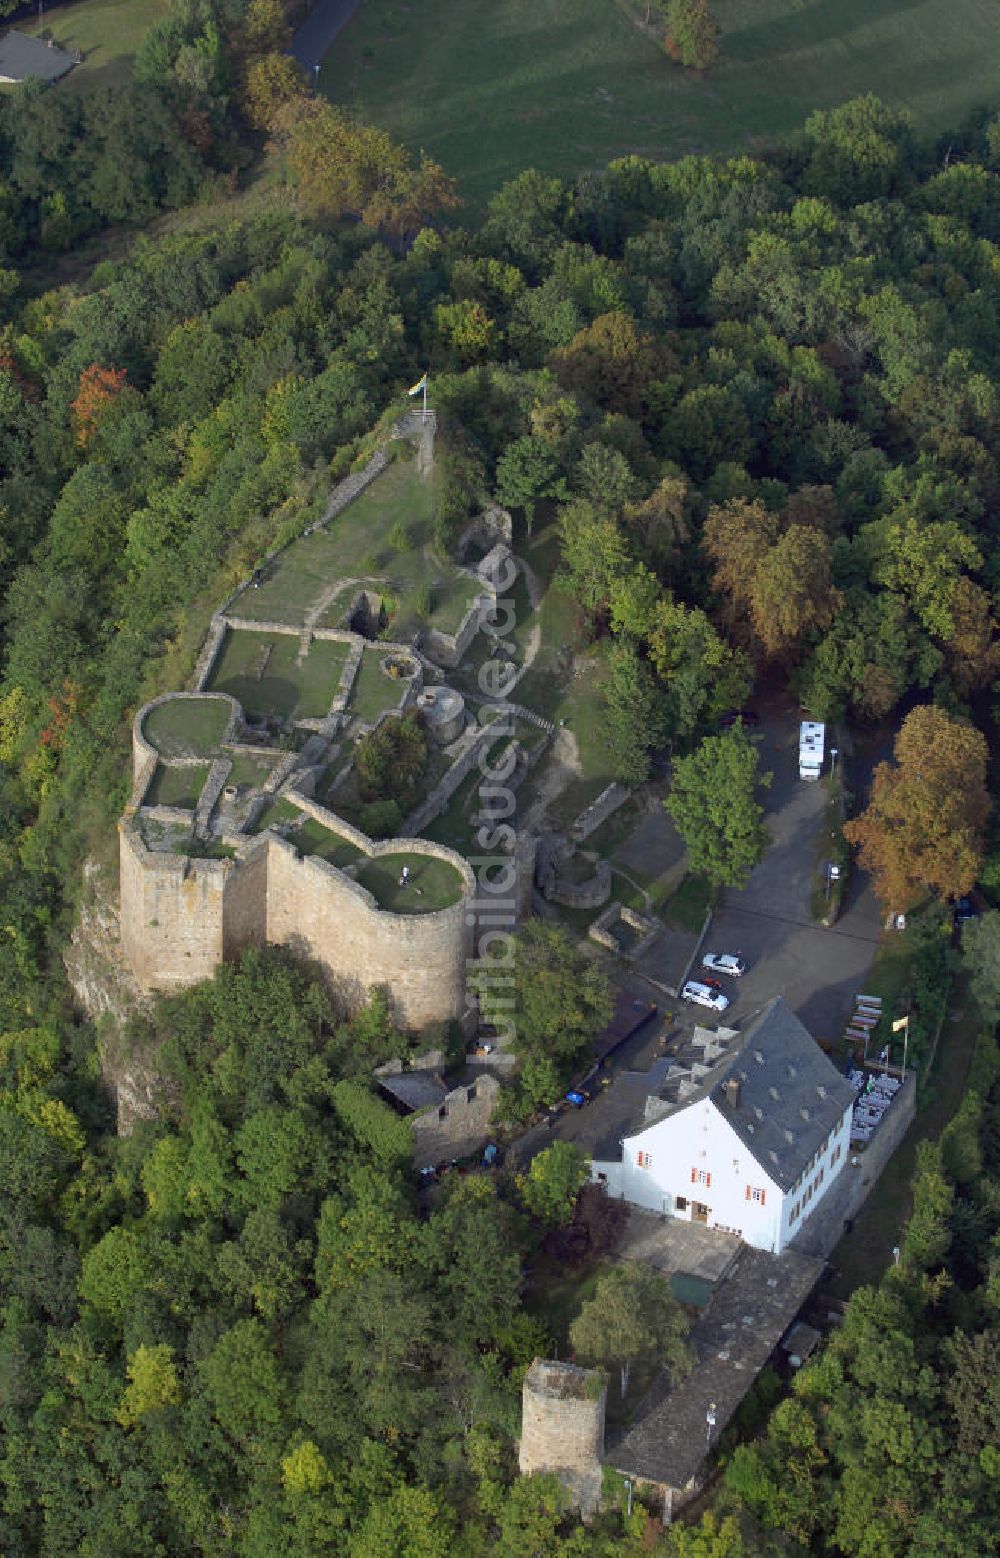 Luftbild Kirn - Blick auf die Kyrburg nahe der Stadt Kirn, deren Wahrzeichen sie ist